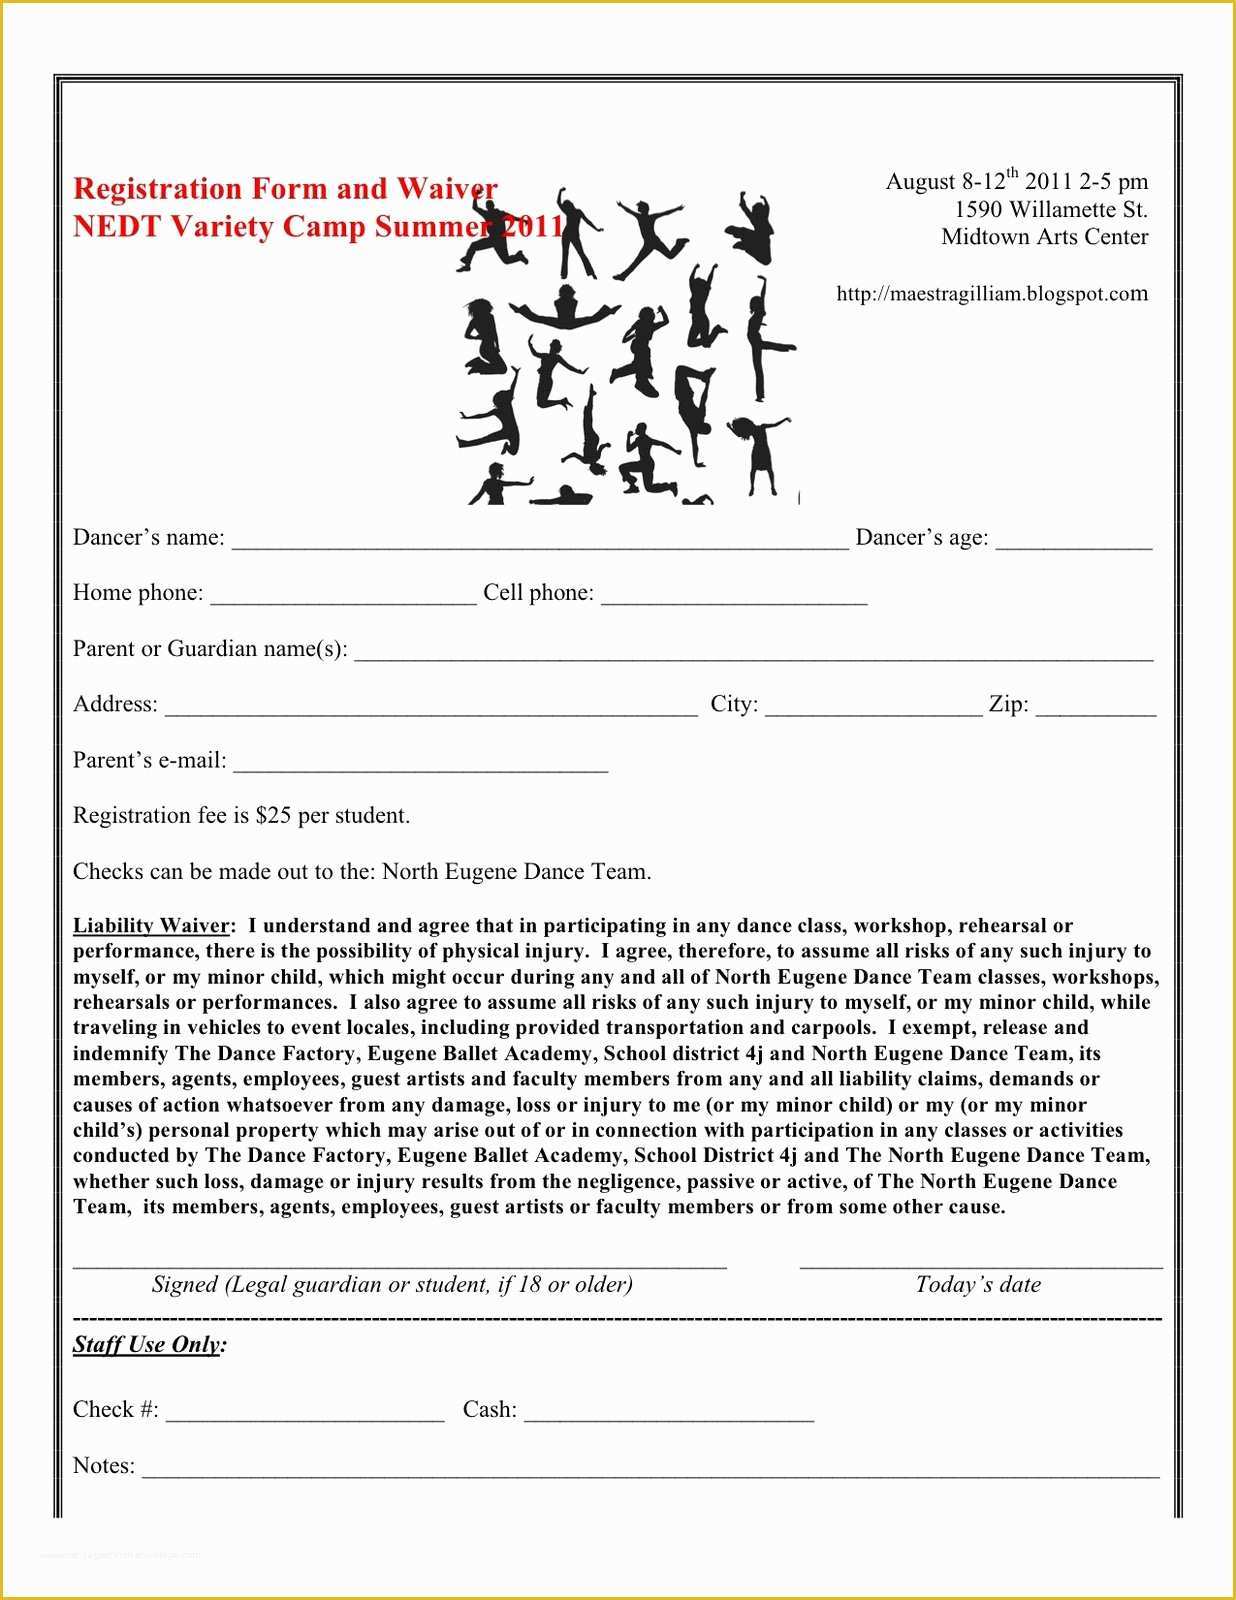 Dance Registration form Template Free Of Nedt Variety Sampler Dance Camp Ing Up